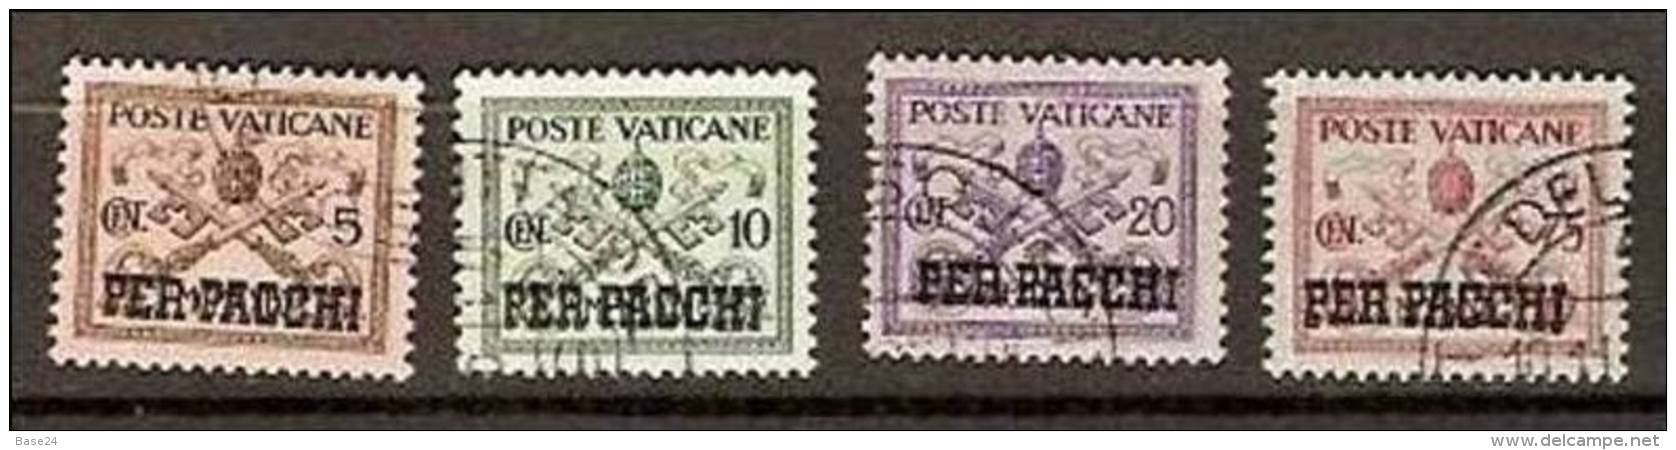 1931 Vaticano Vatican PACCHI POSTALI  5c+10c+20c+75c Usati USED Parcel Post - Parcel Post